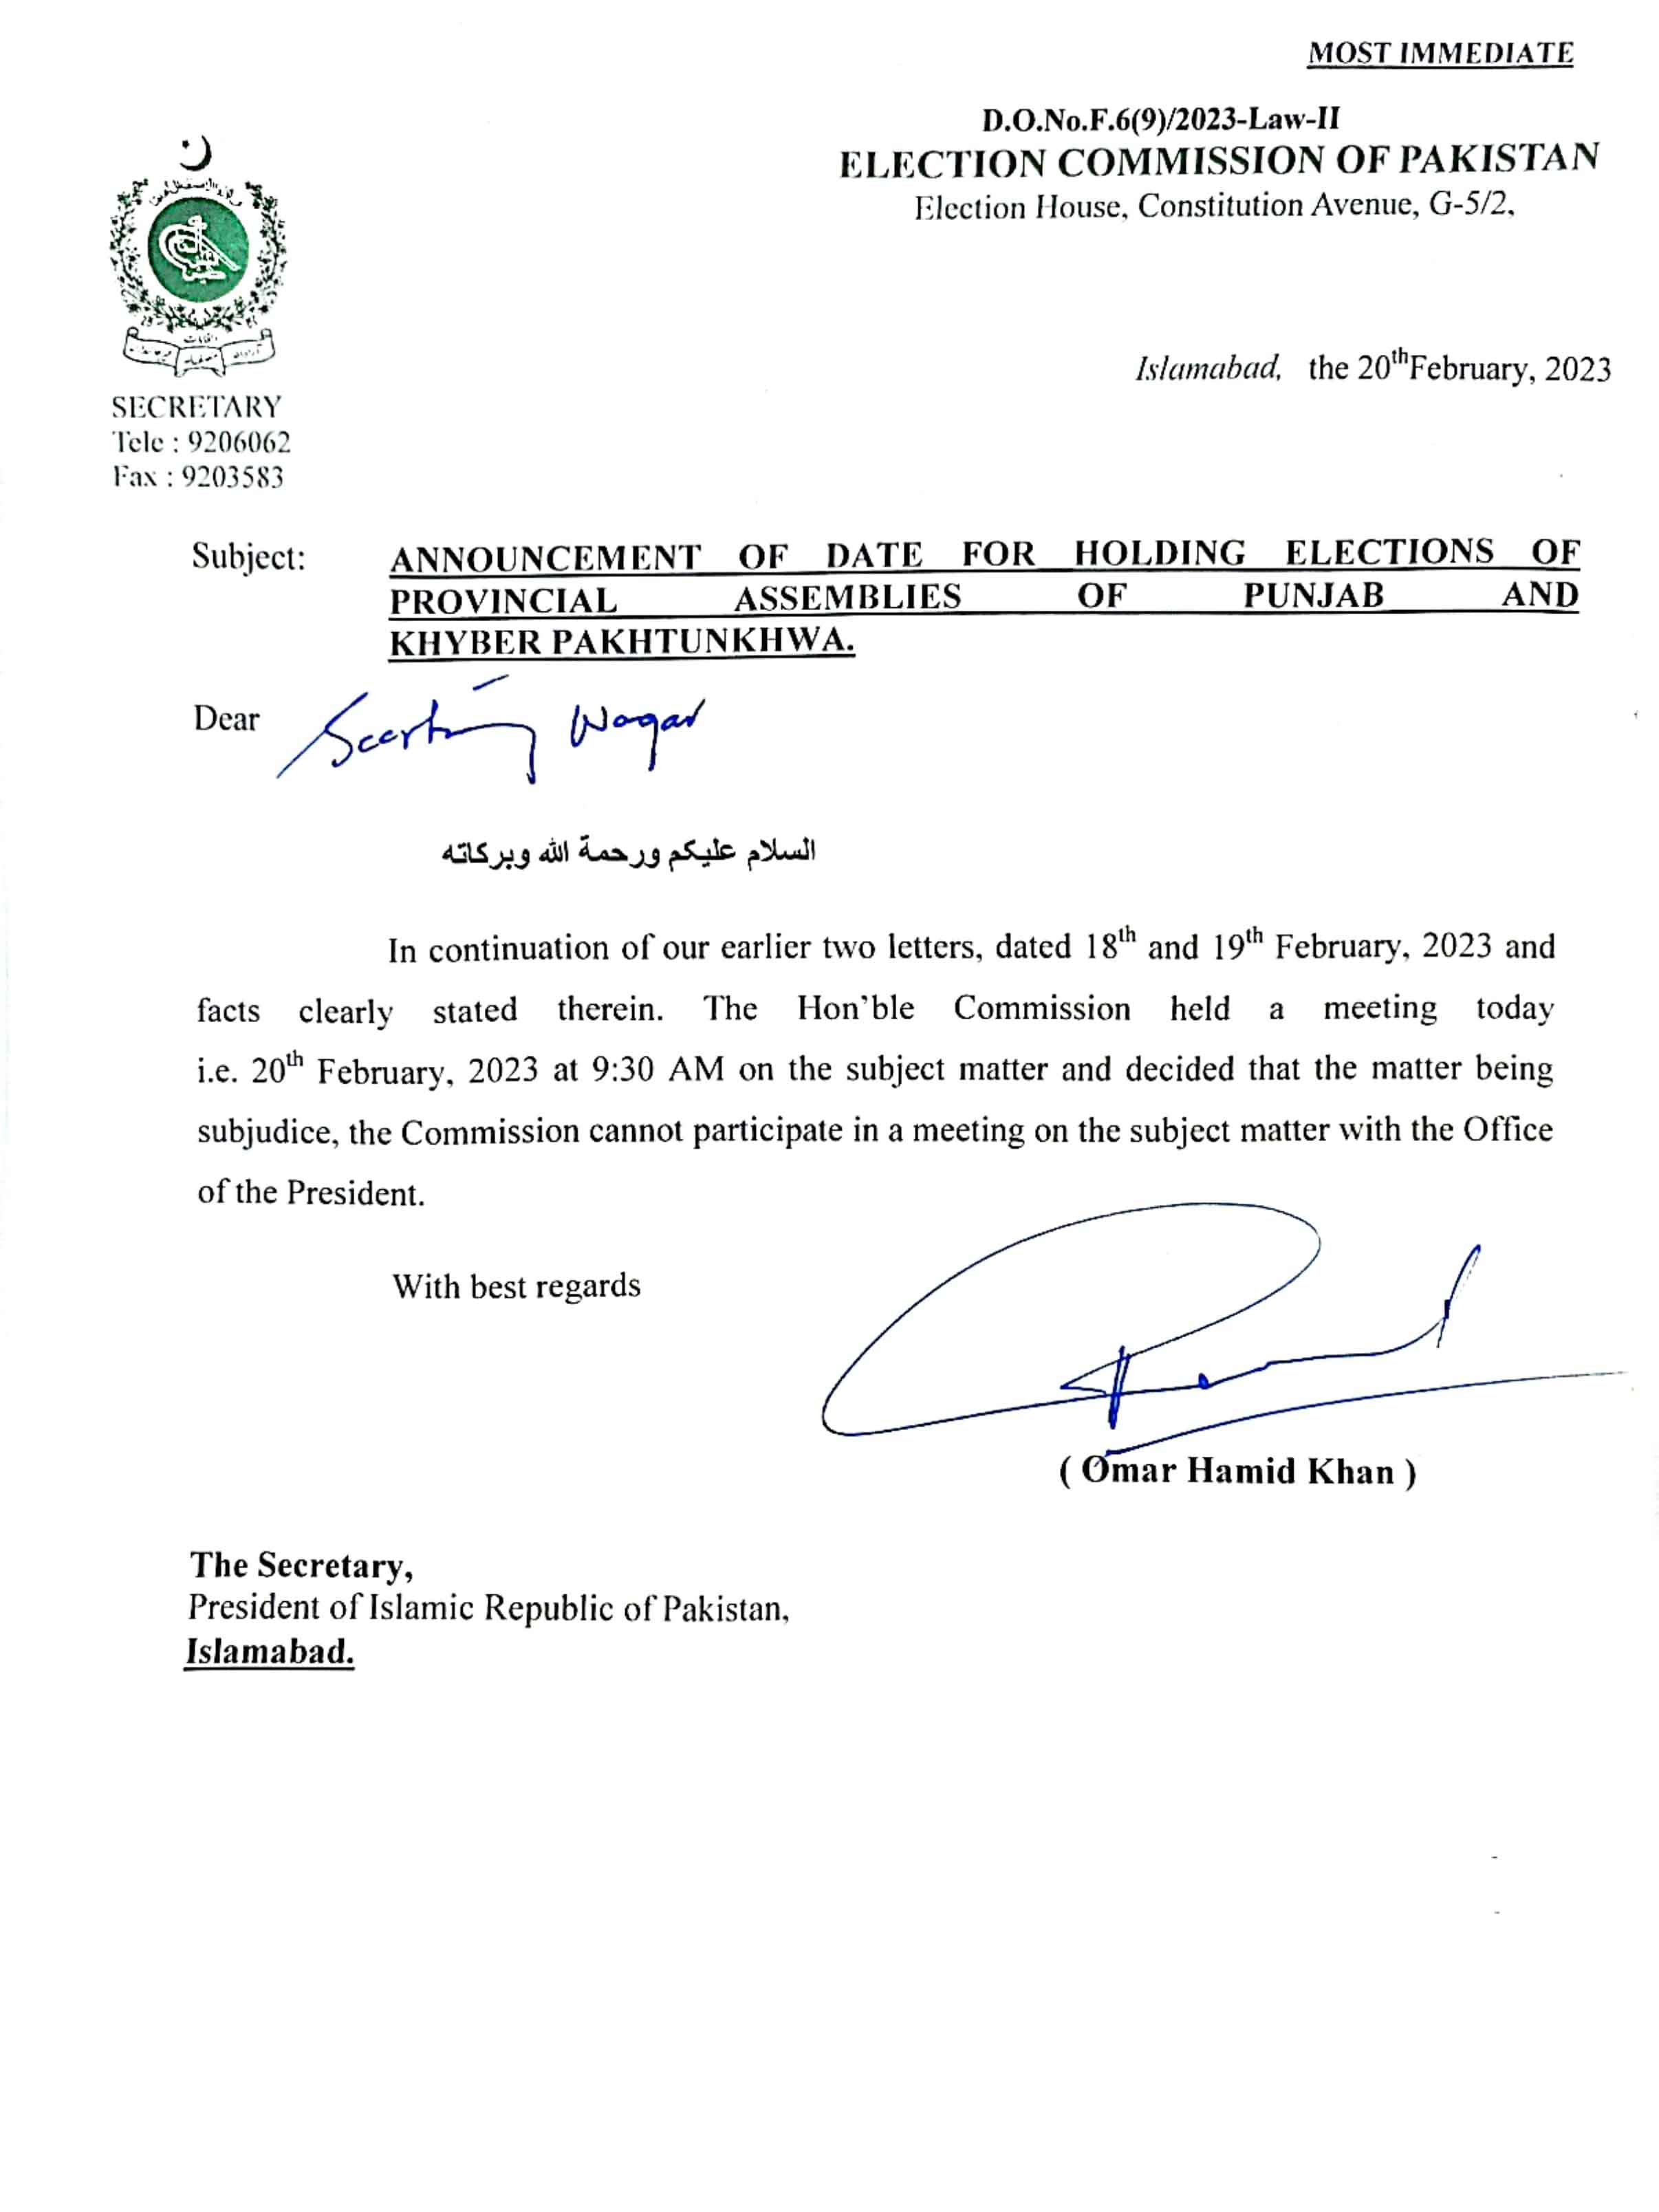 The image of an ECP letter written to President Arif Alvi.